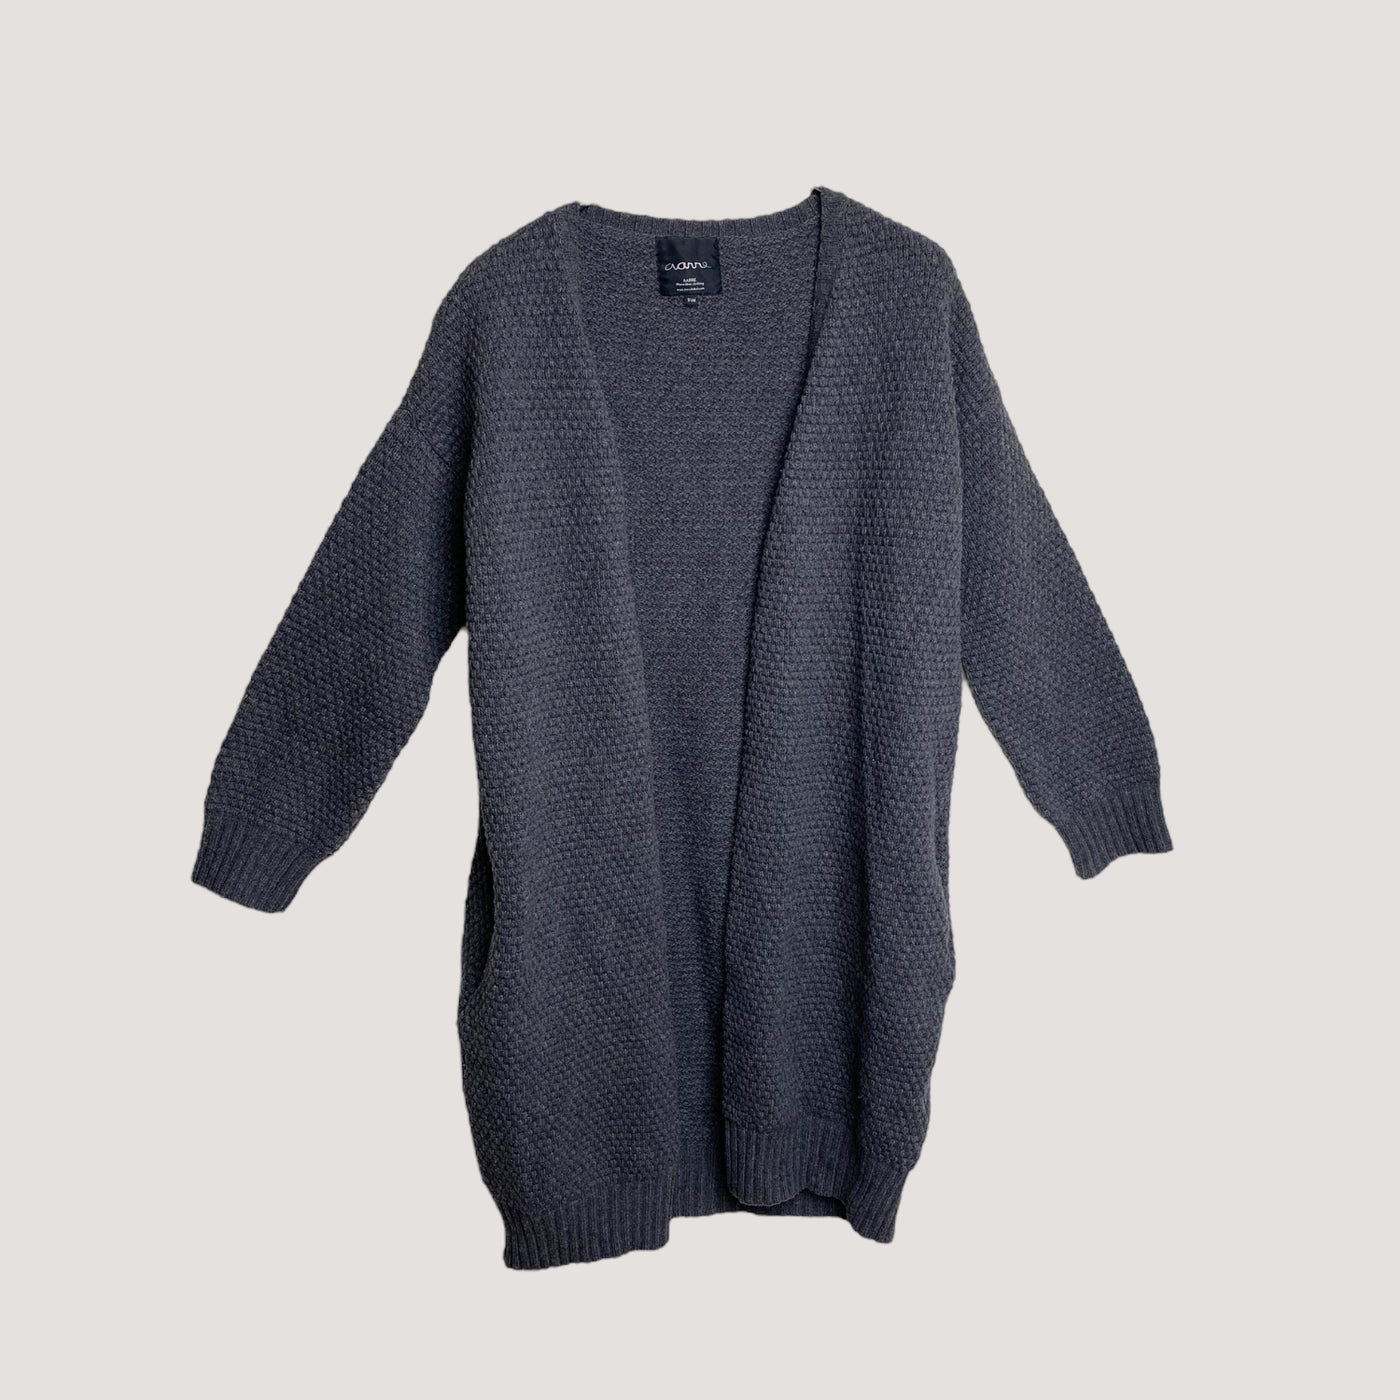 Aarre wool cardigan, grey | women S/M